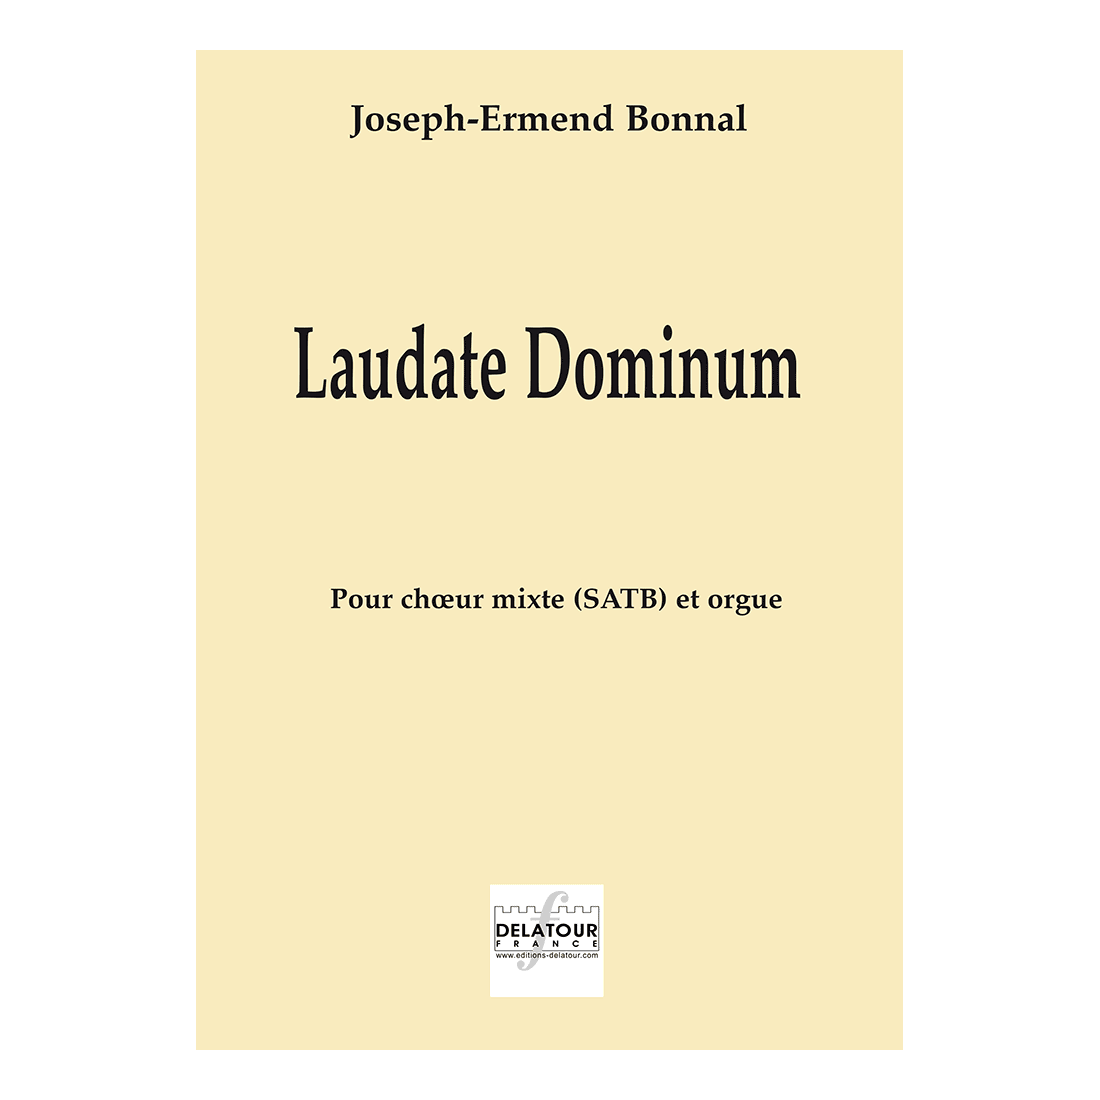 Laudate dominum pour choeur mixte et orgue